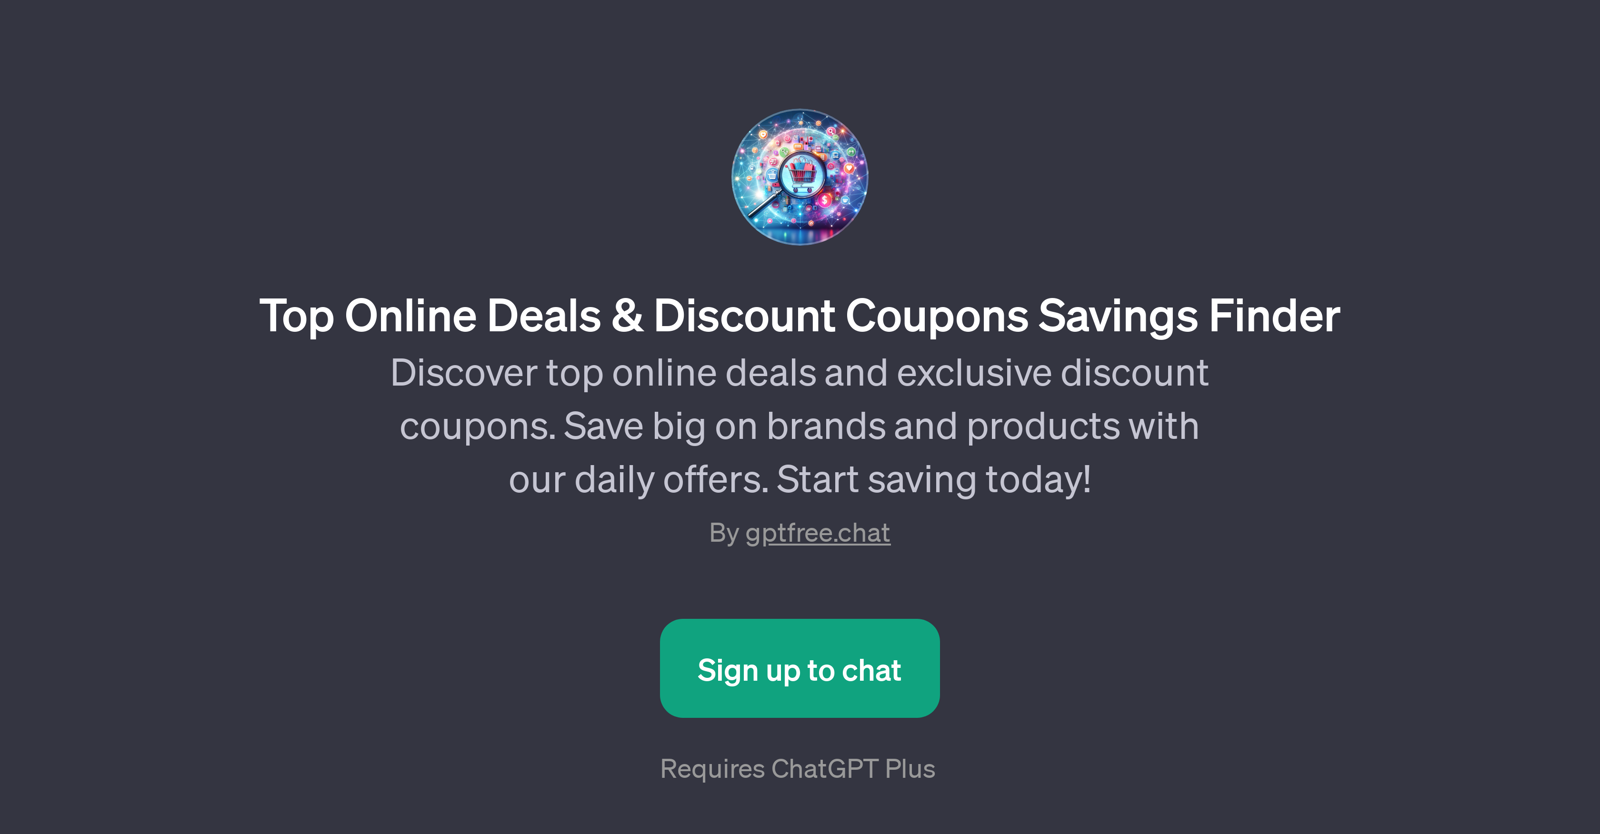 Top Online Deals & Discount Coupons Savings Finder website